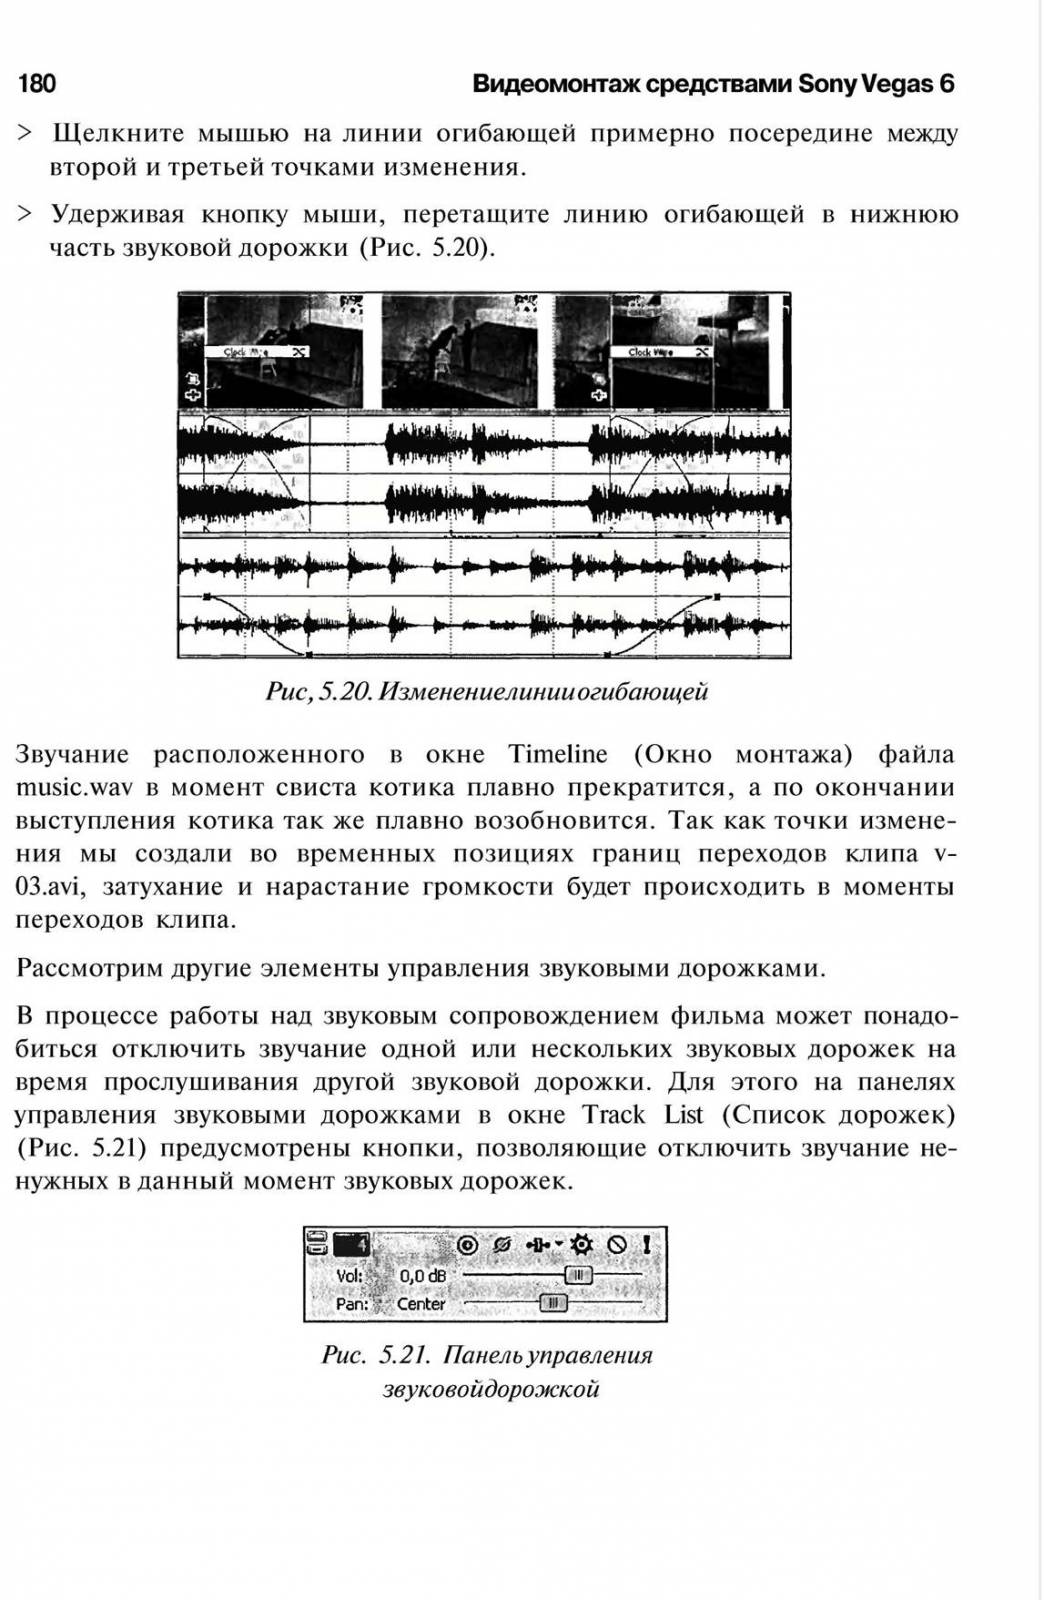 http://redaktori-uroki.3dn.ru/_ph/6/225942342.jpg